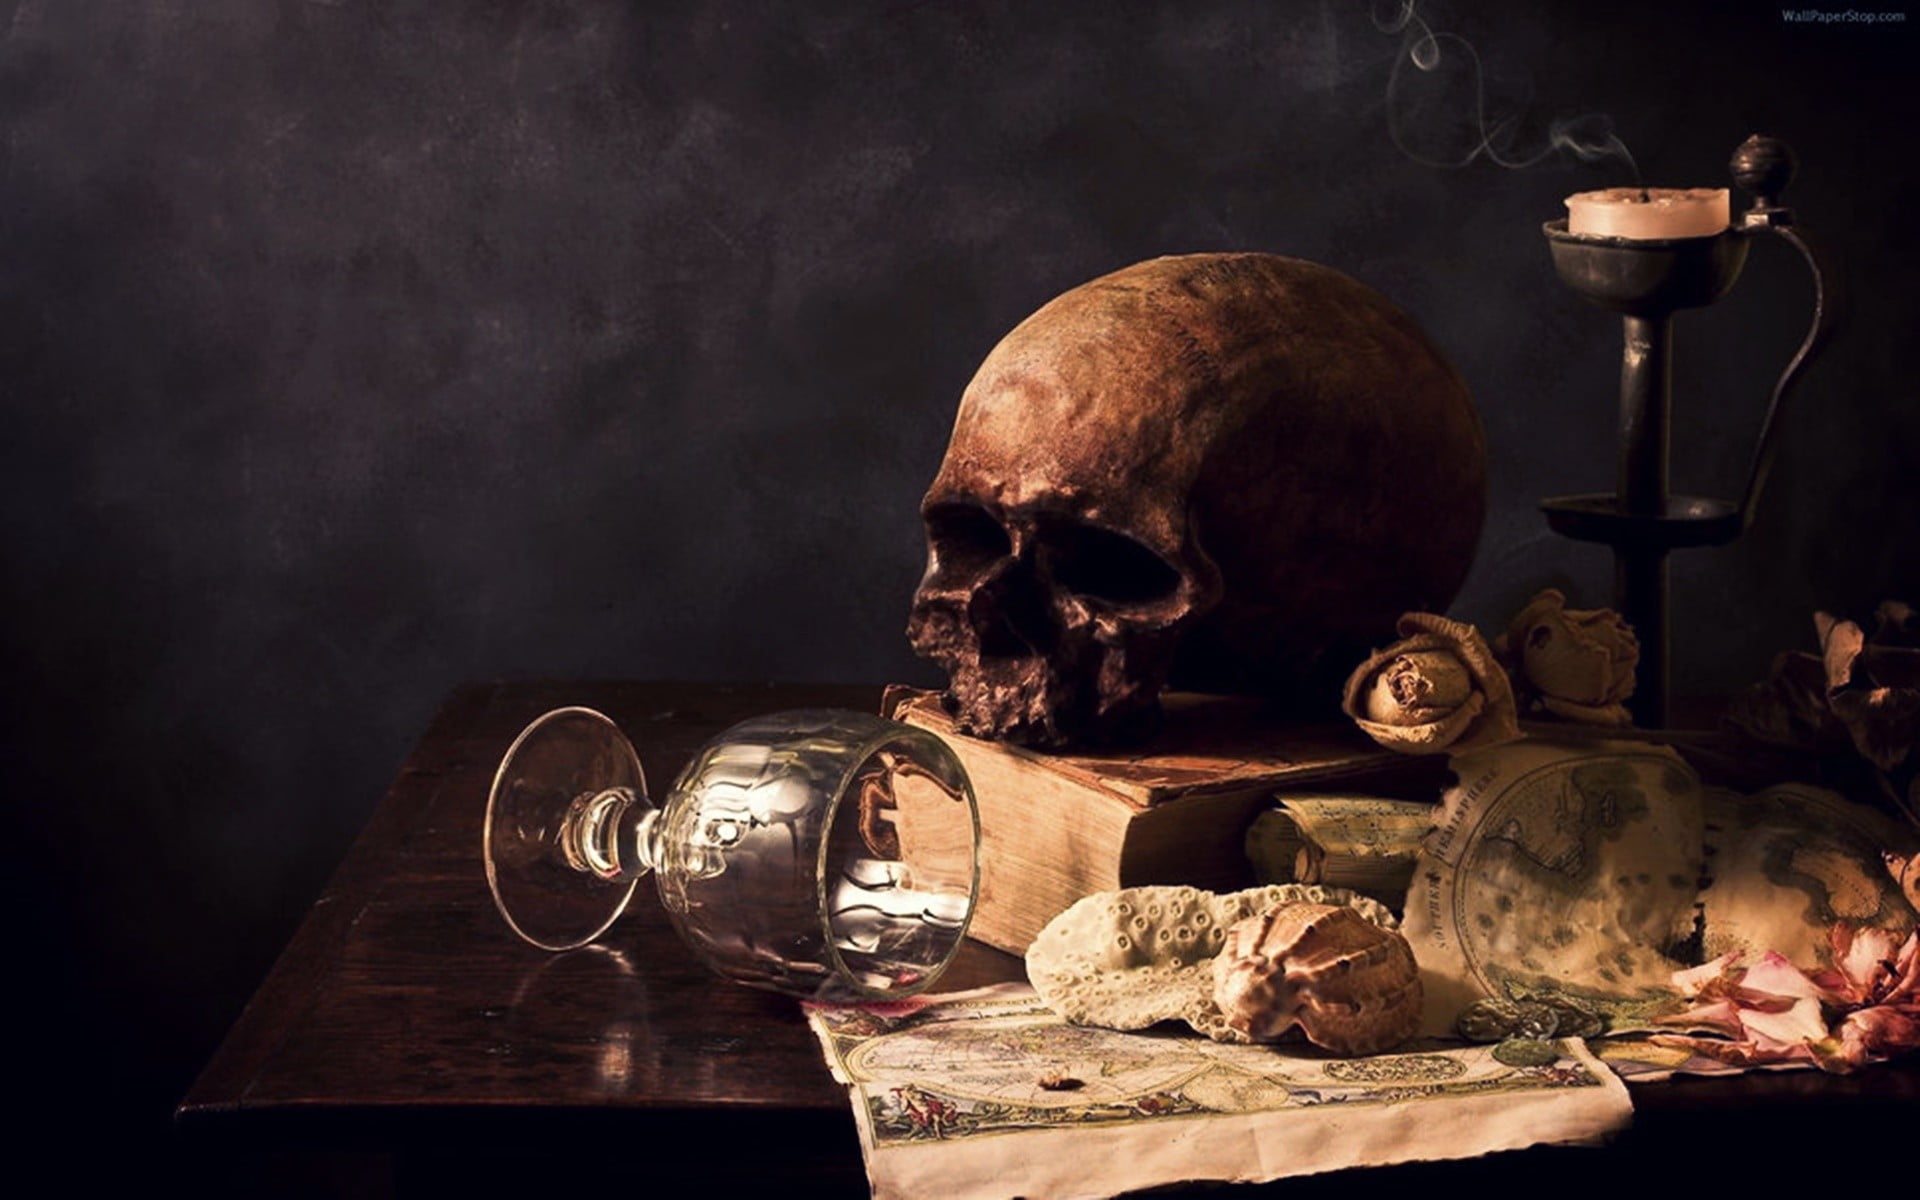 skull-drinking-glass-table-books-wallpaper.jpg